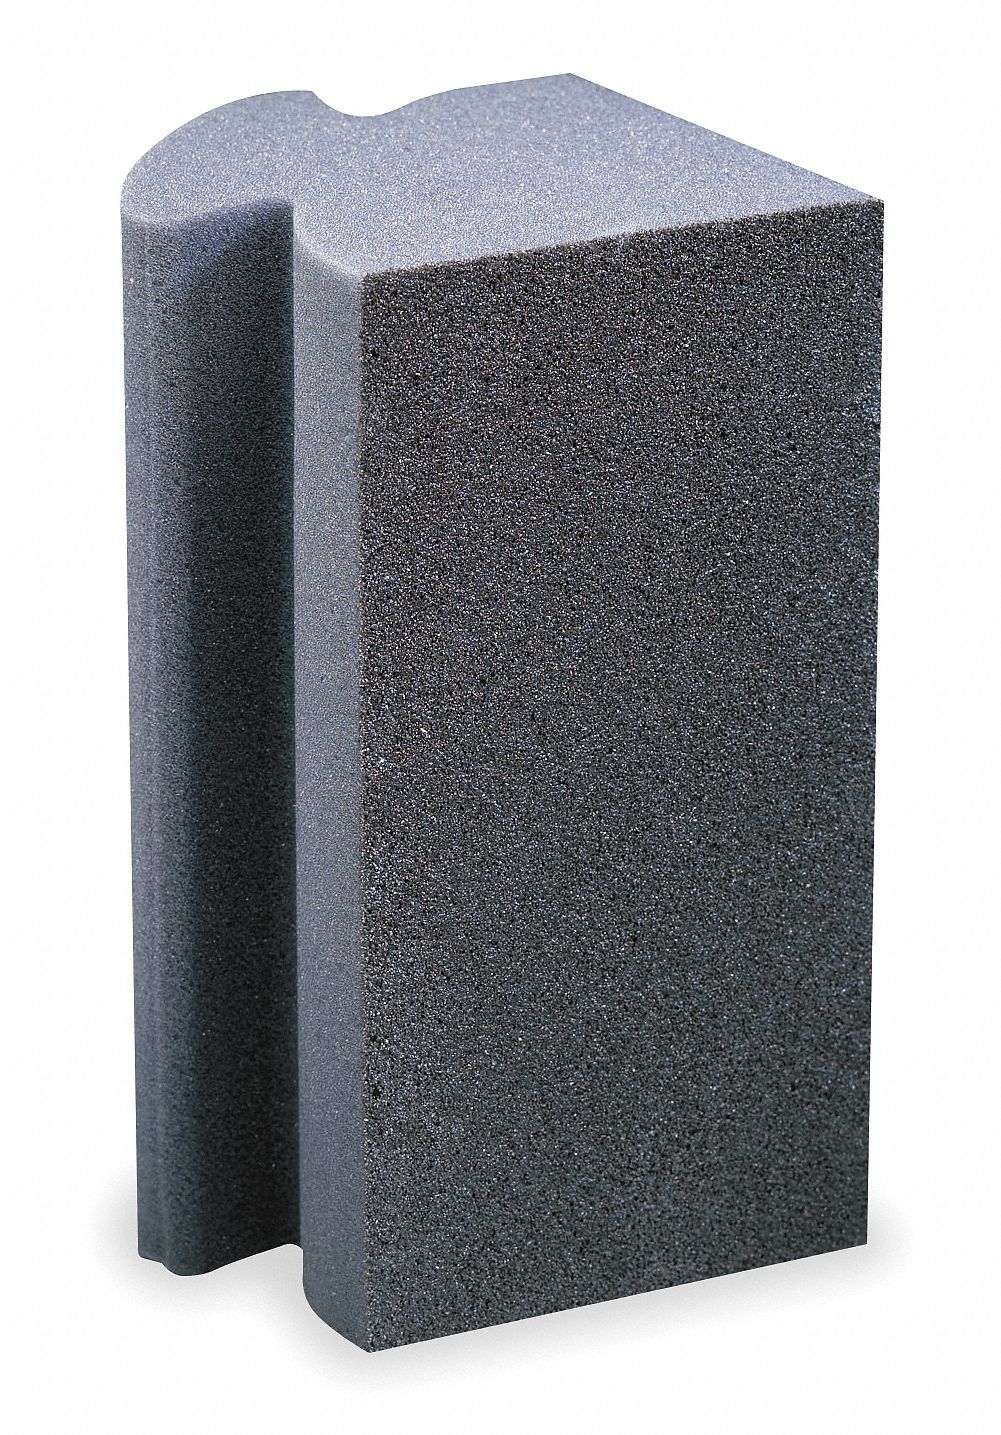 Sanding Sponge Norton 01715 Medium Corner Drywall Black for